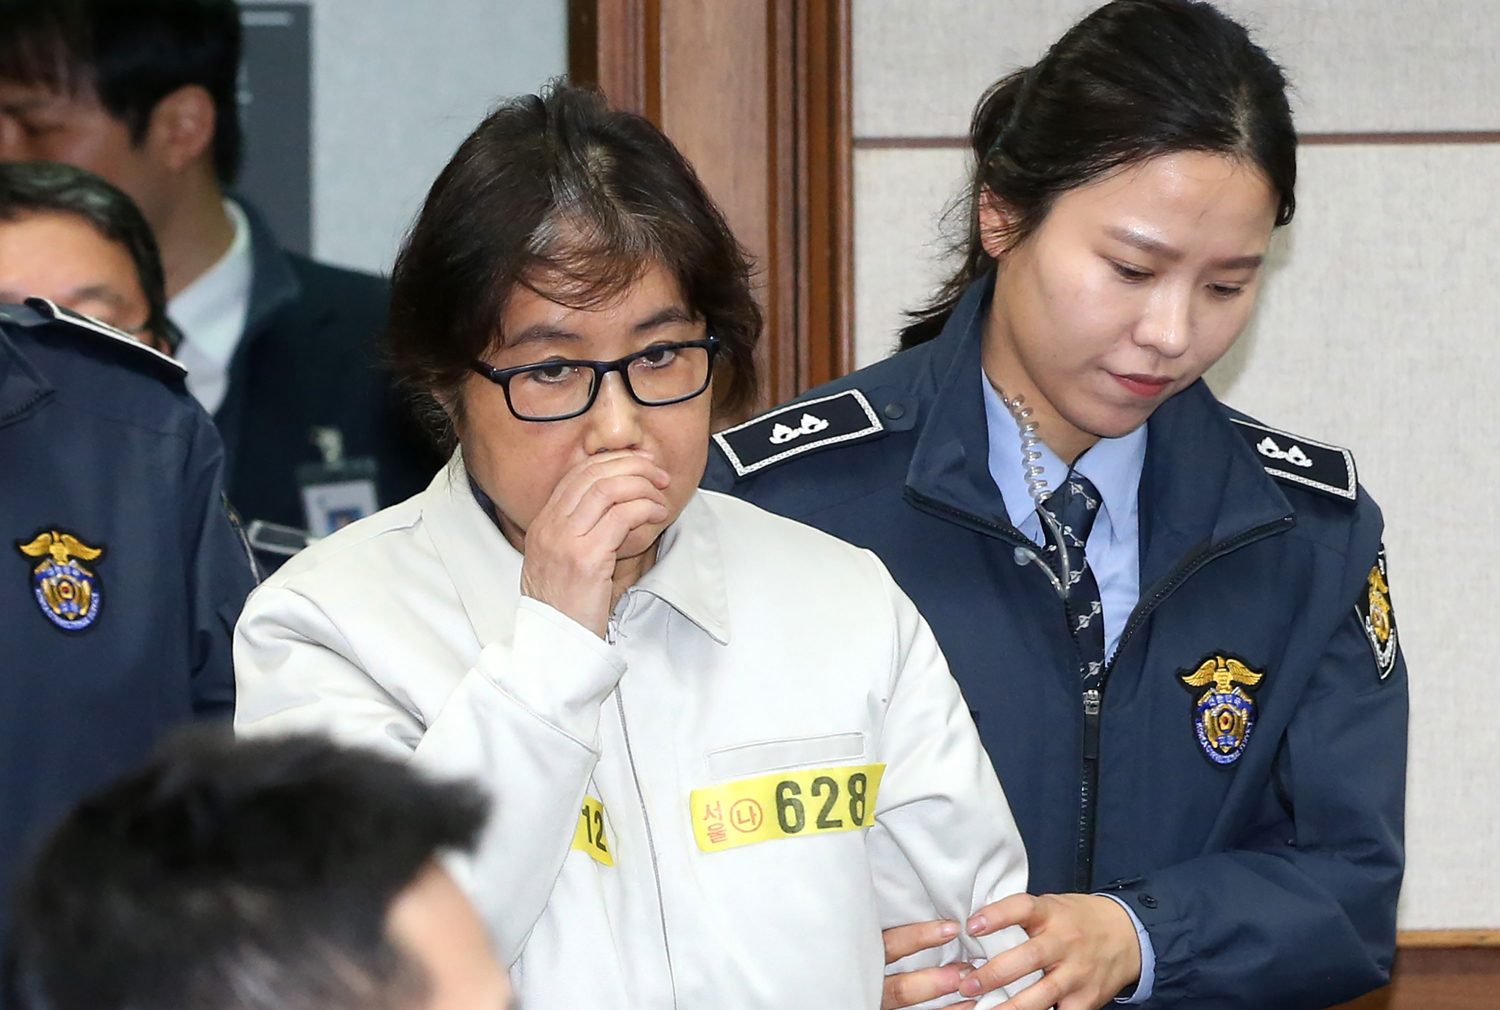  นางชเว ซุน ซิล ที่ได้ฉายา รัสปูตินหญิงแดนเกาหลีใต้ ซึ่งเป็นเพื่อนสนิทของประธานาธิบดีปาร์ค กึน-เฮ ของเกาหลีใต้ มาขึ้นศาลในการเปิดการไต่สวนคดีครั้งแรก เมื่อวันที่ 19 ธ.ค. 59 (AFP PHOTO / KOREA POOL / KOREA POOL / South Korea OUT)